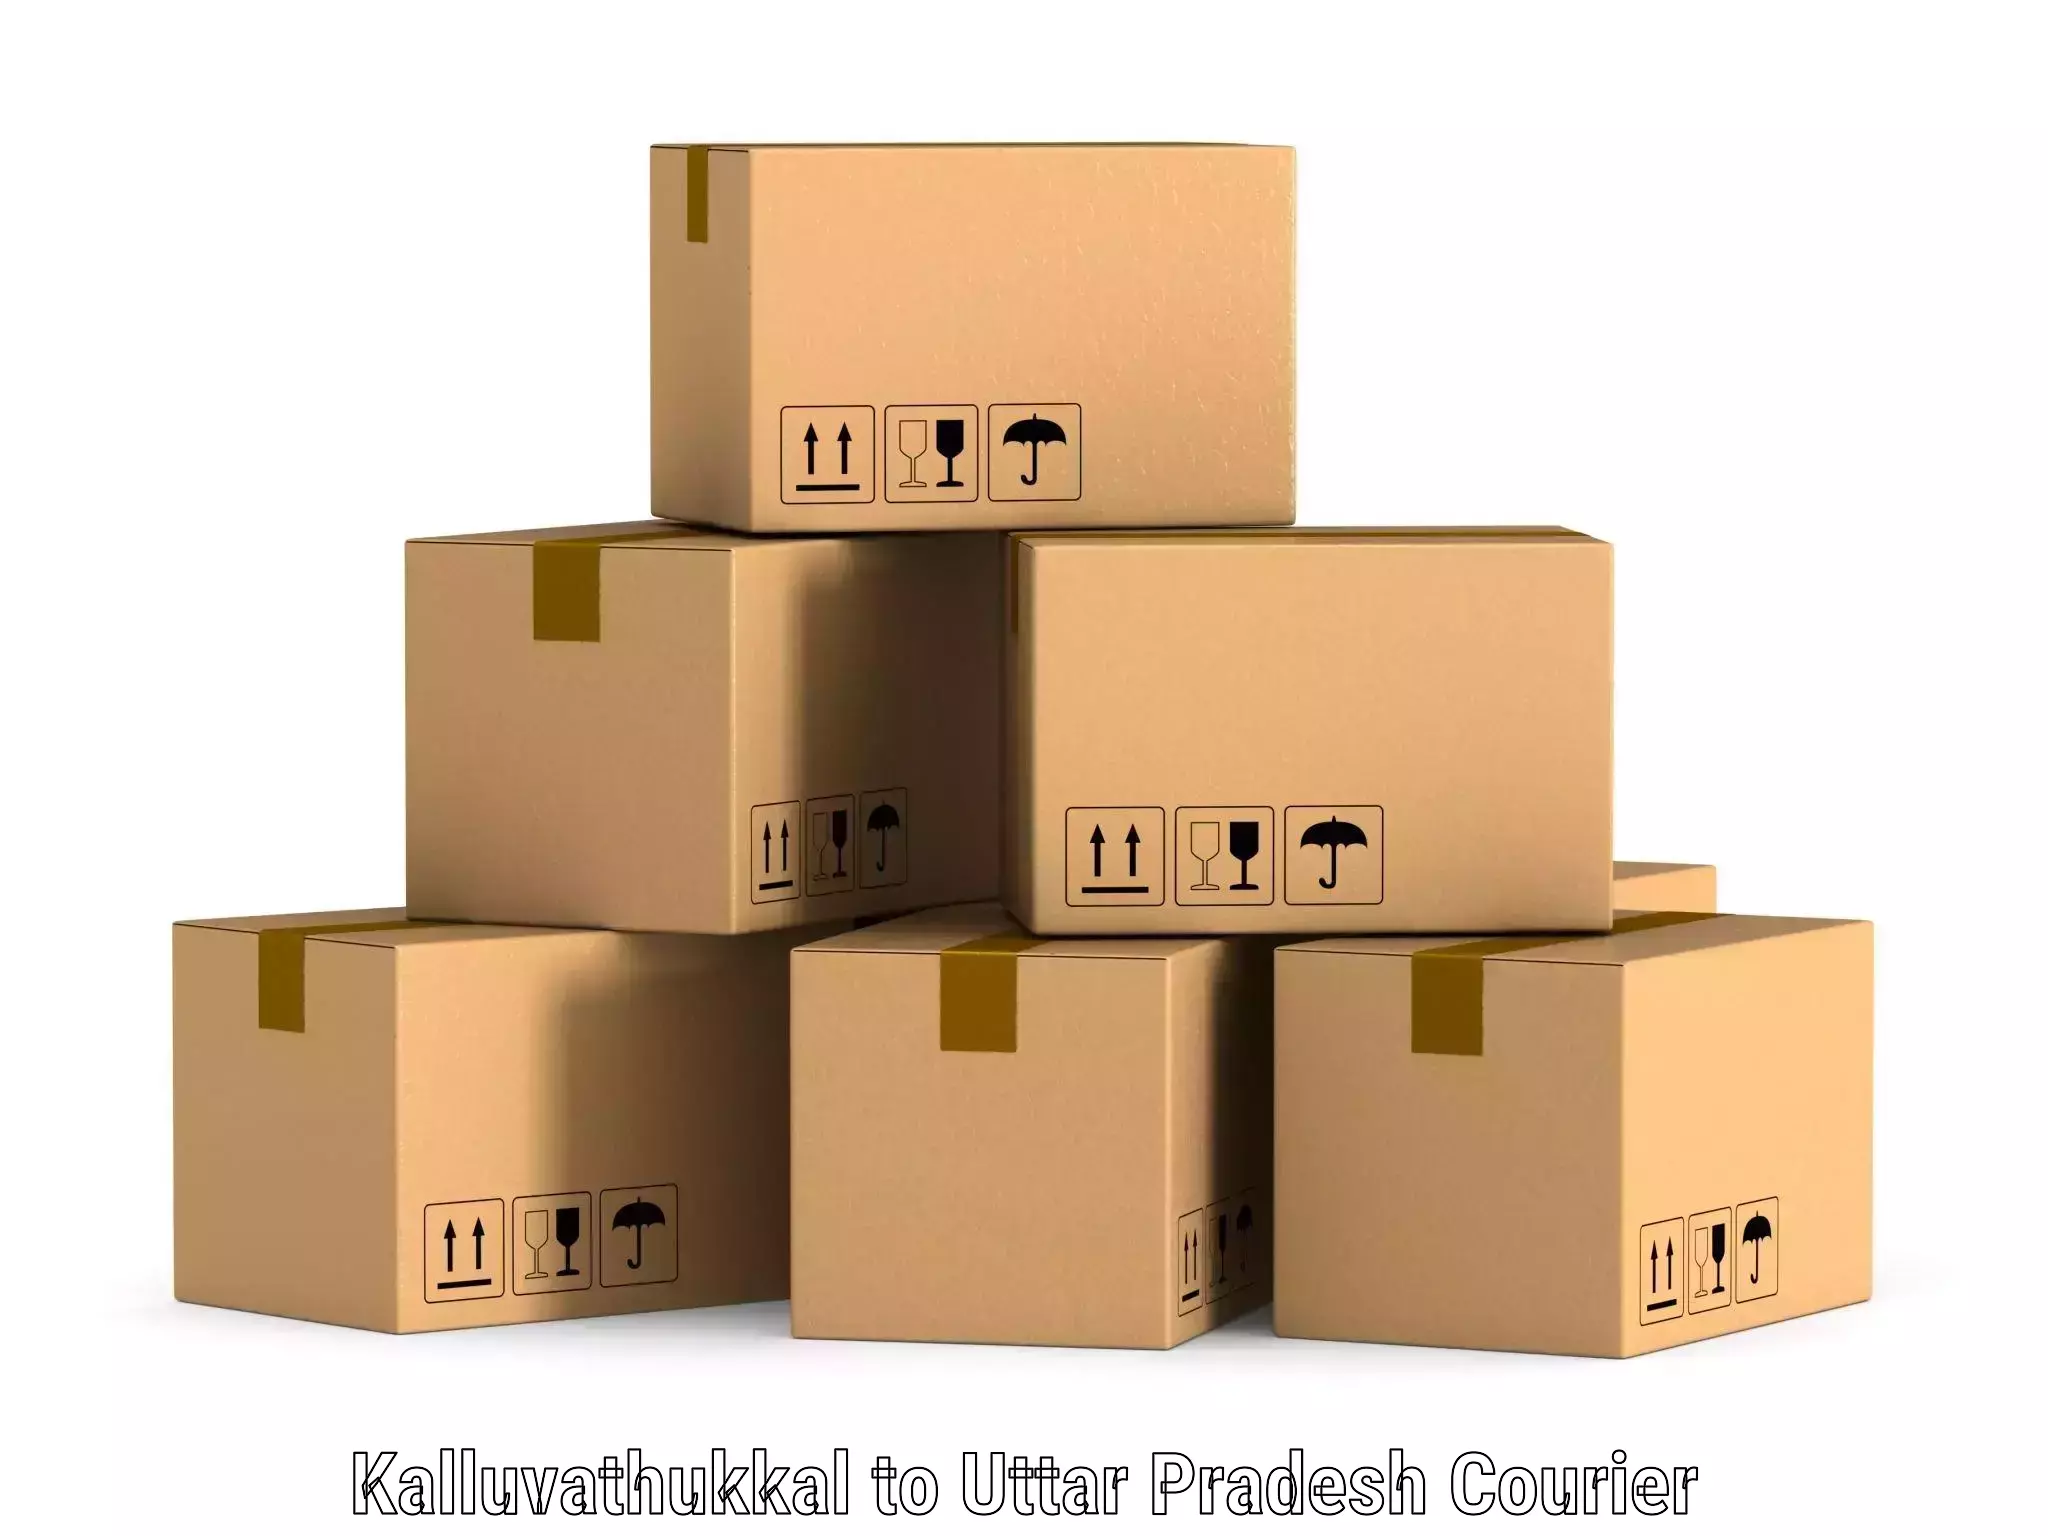 Custom logistics solutions in Kalluvathukkal to Varanasi